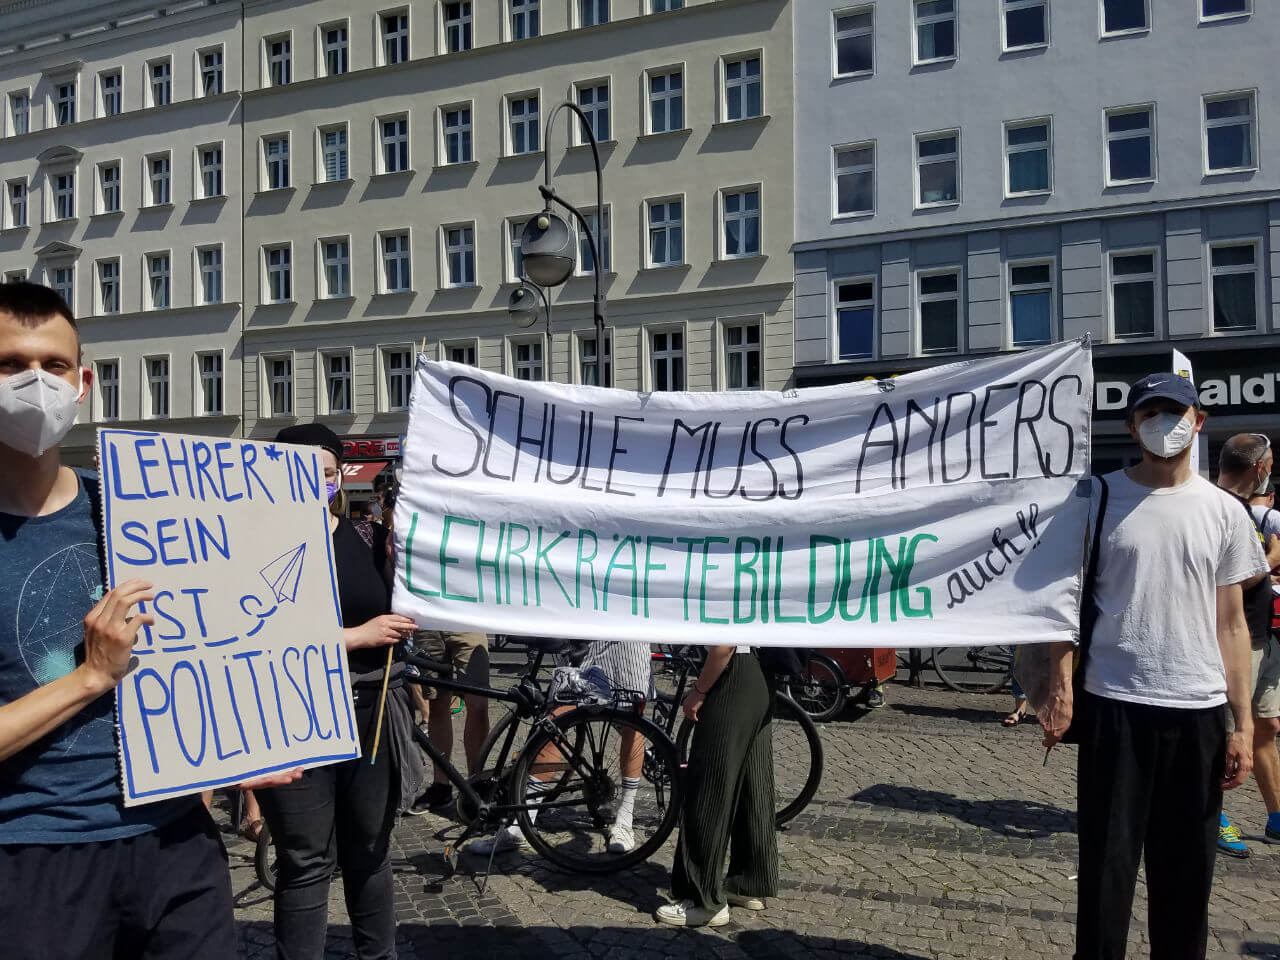 Schule Muss Anders Demo - Menschen halten ein Banner hoch